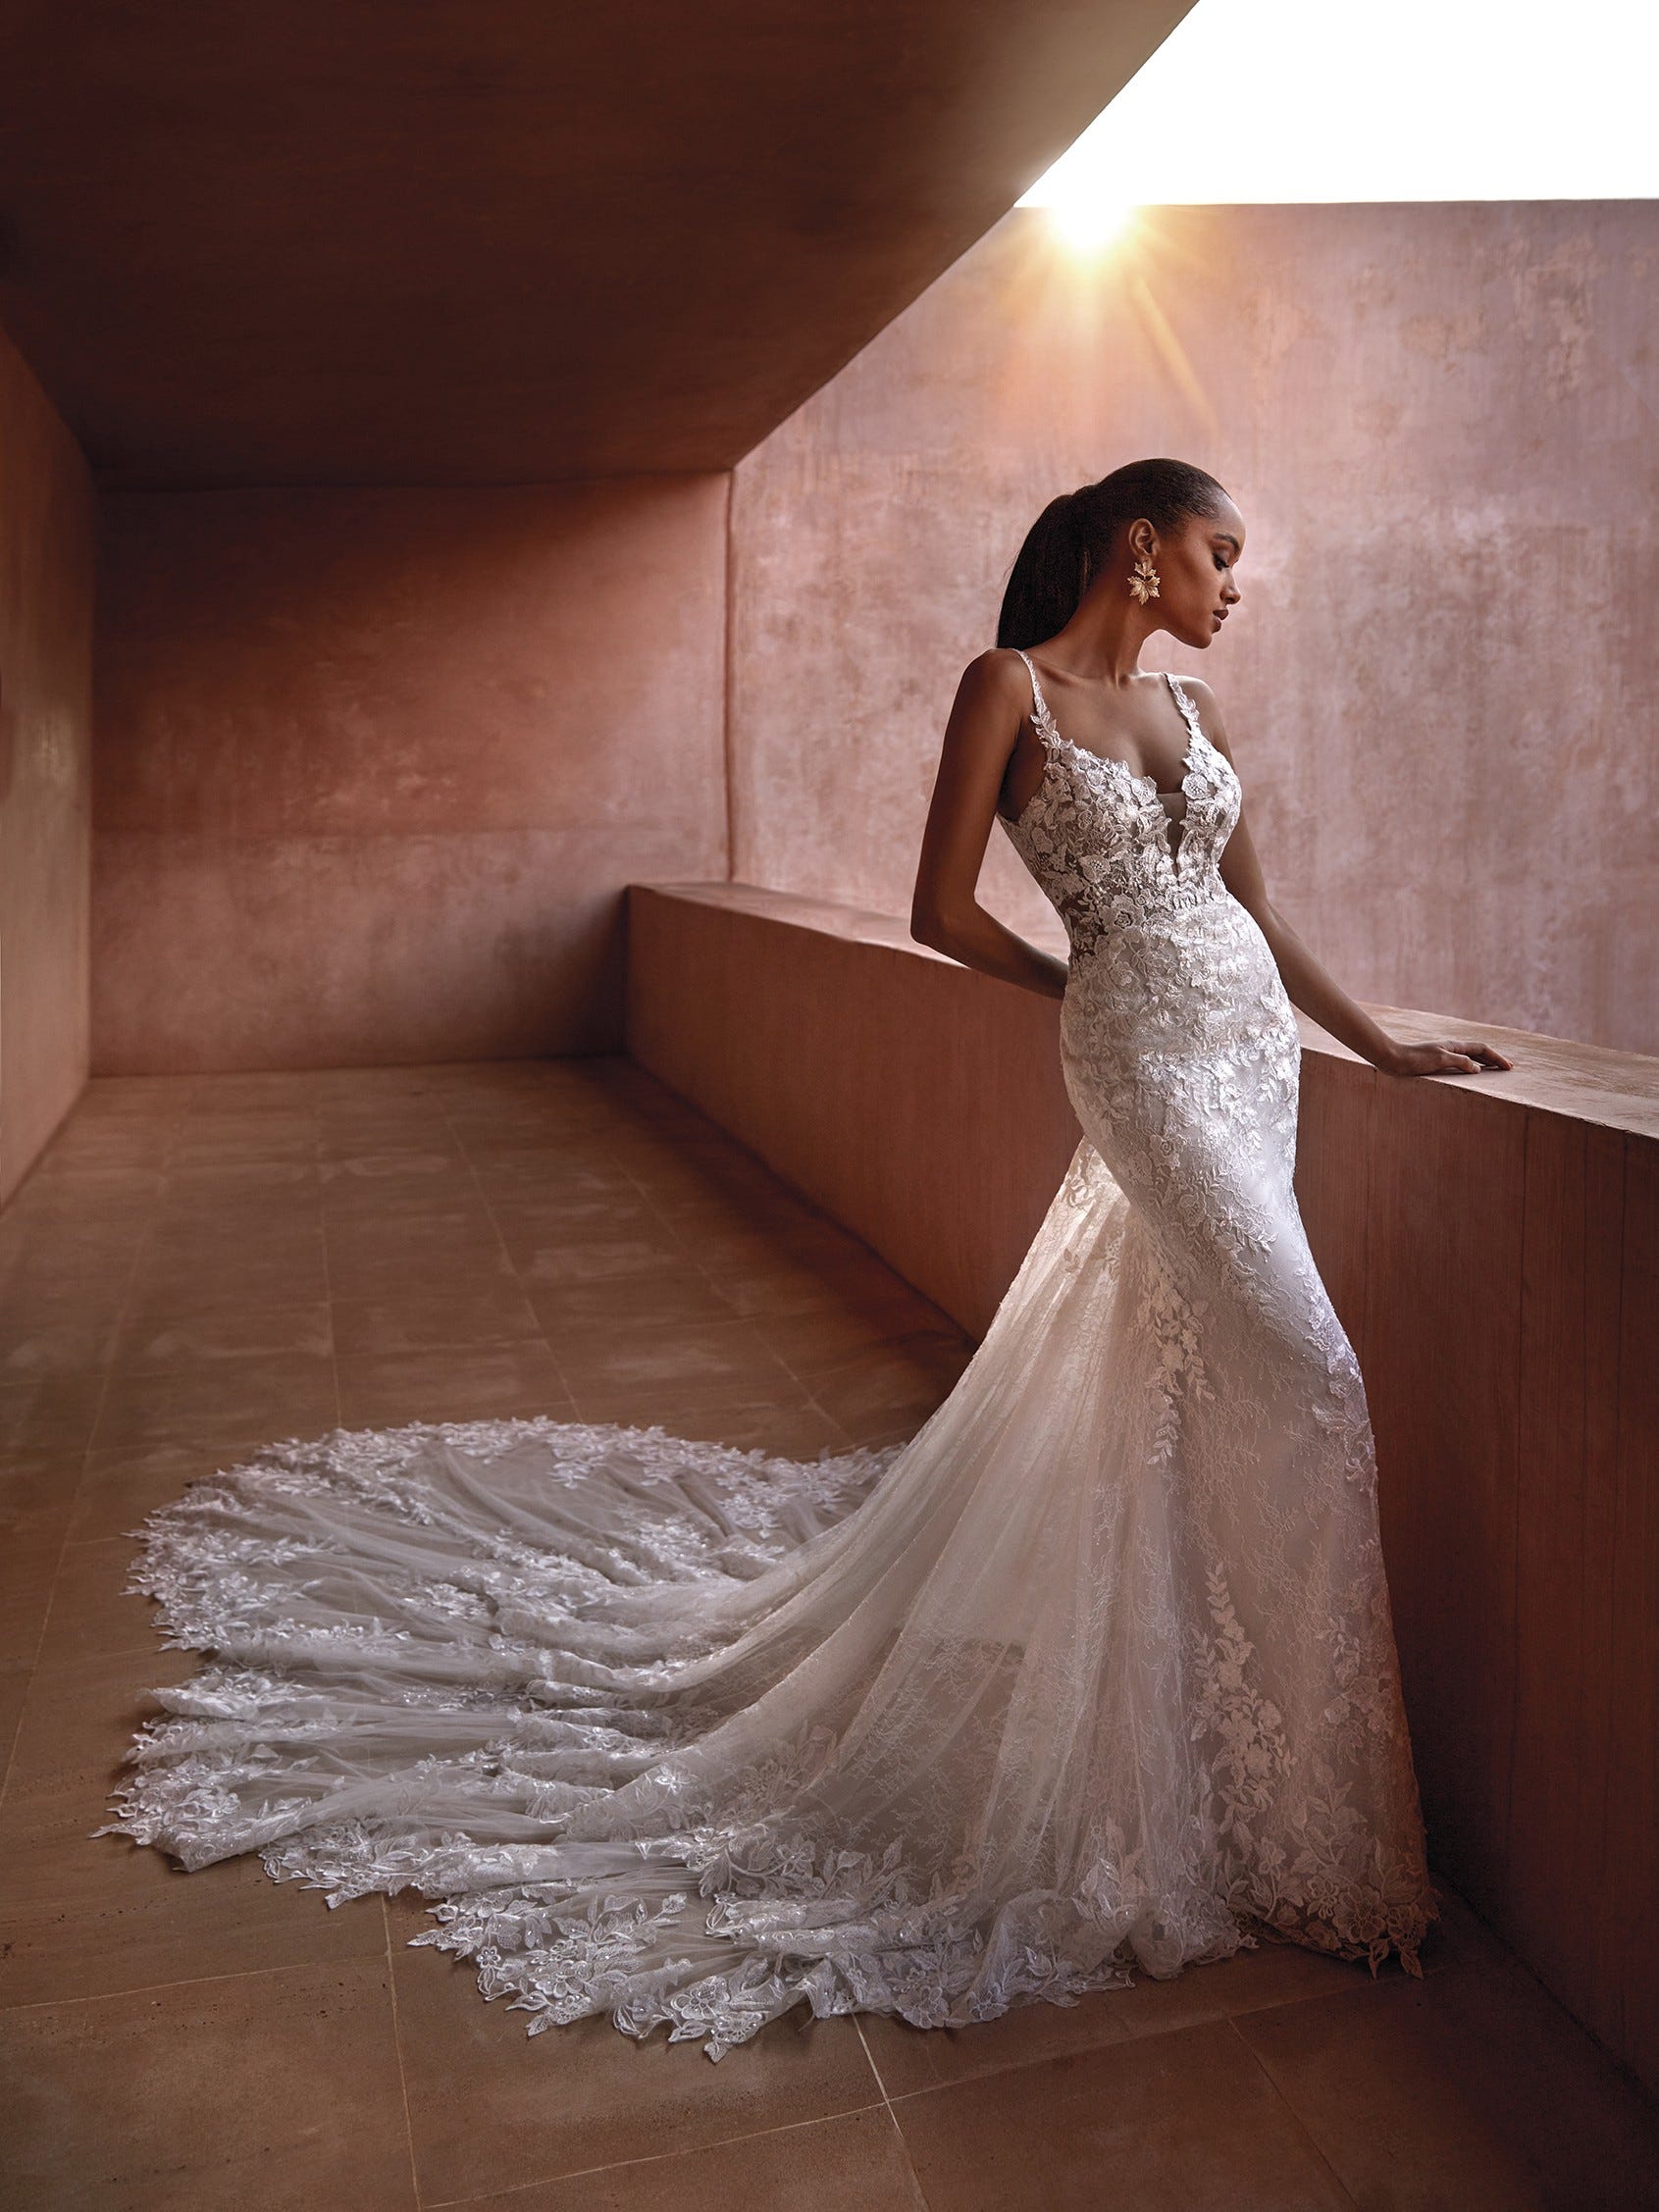 Lebanon Fishtail Wedding Dress – TC344 | Sentani Boutique